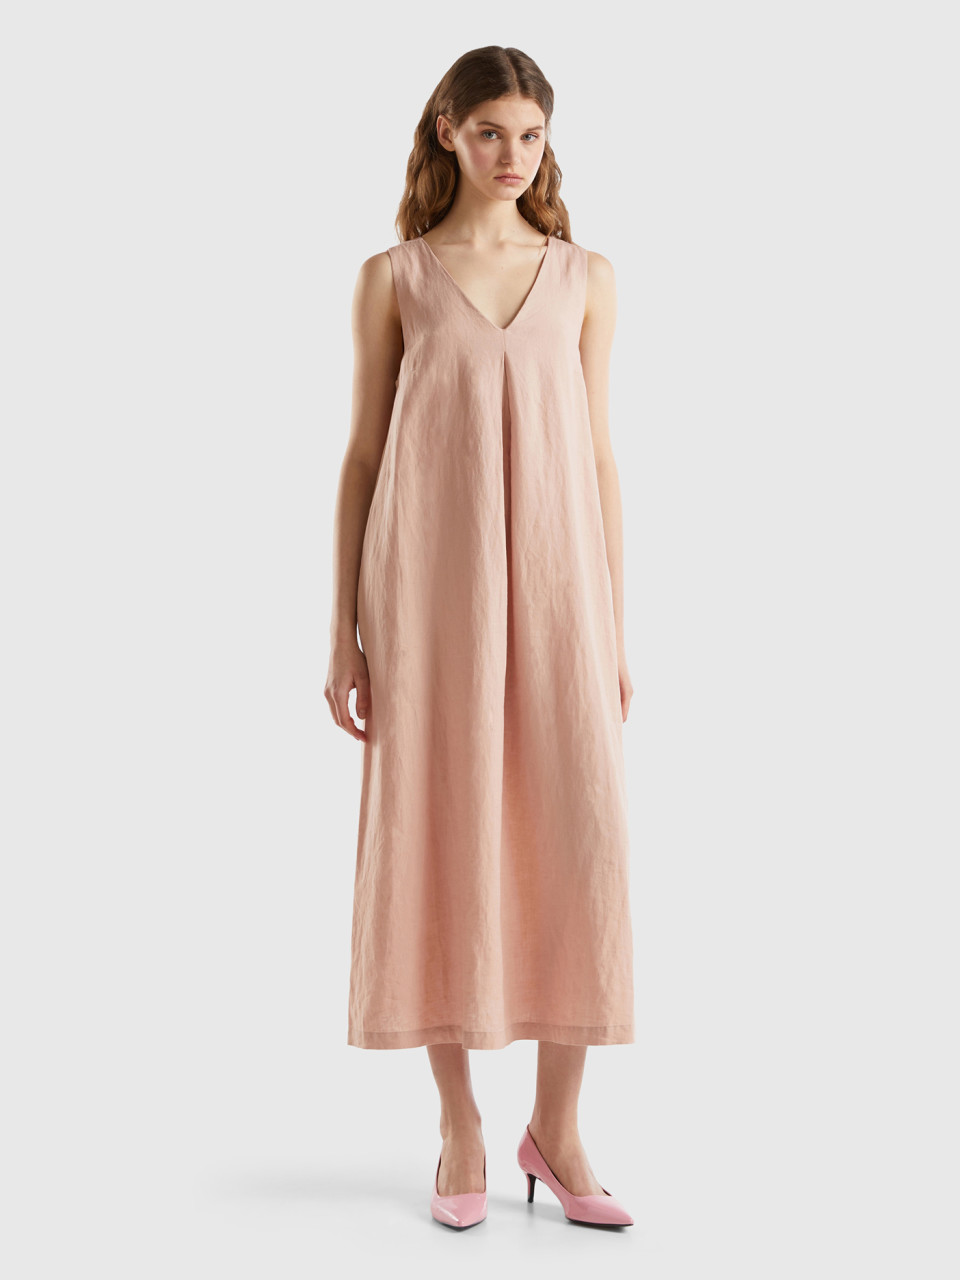 Benetton, Sleeveless Dress In Pure Linen, Soft Pink, Women